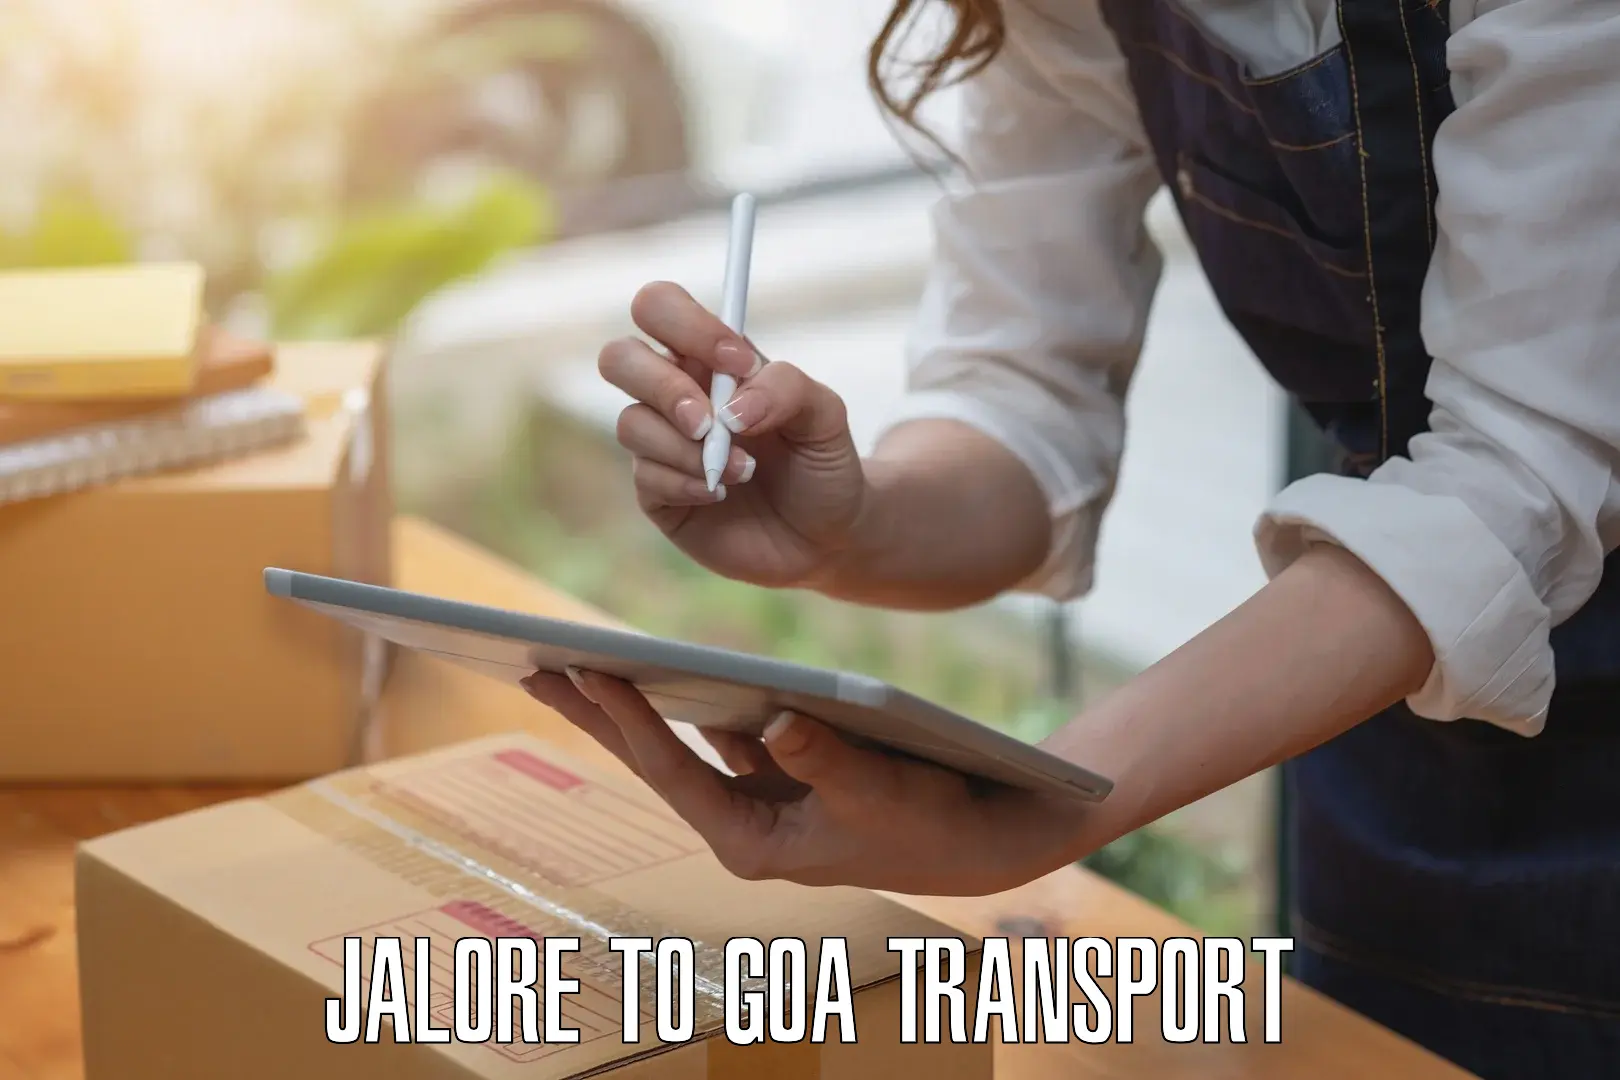 Express transport services Jalore to Mormugao Port